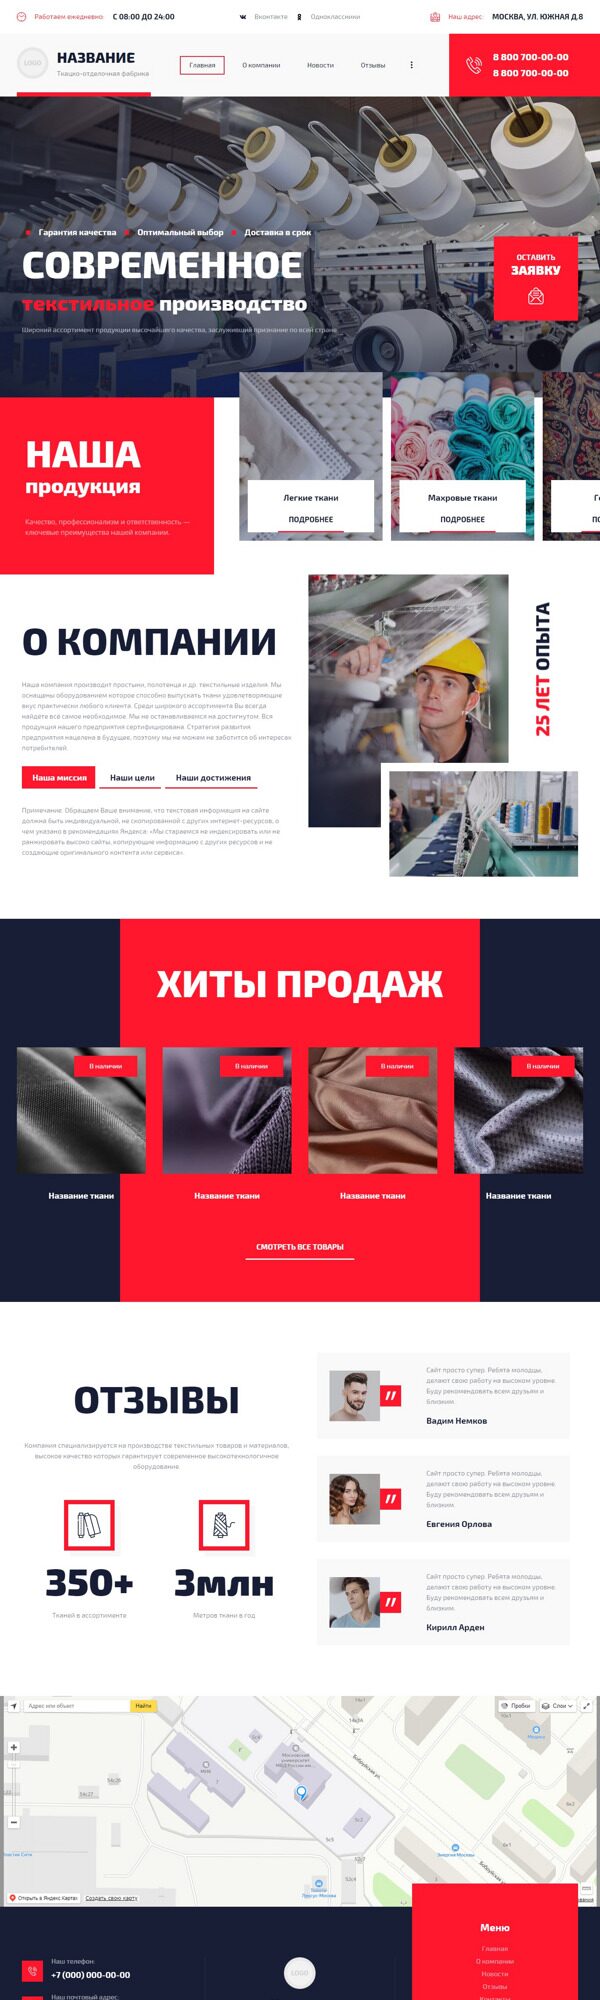 Готовый Сайт-Бизнес № 4217800 - Промышленный текстиль, нетканые материалы (Десктопная версия)